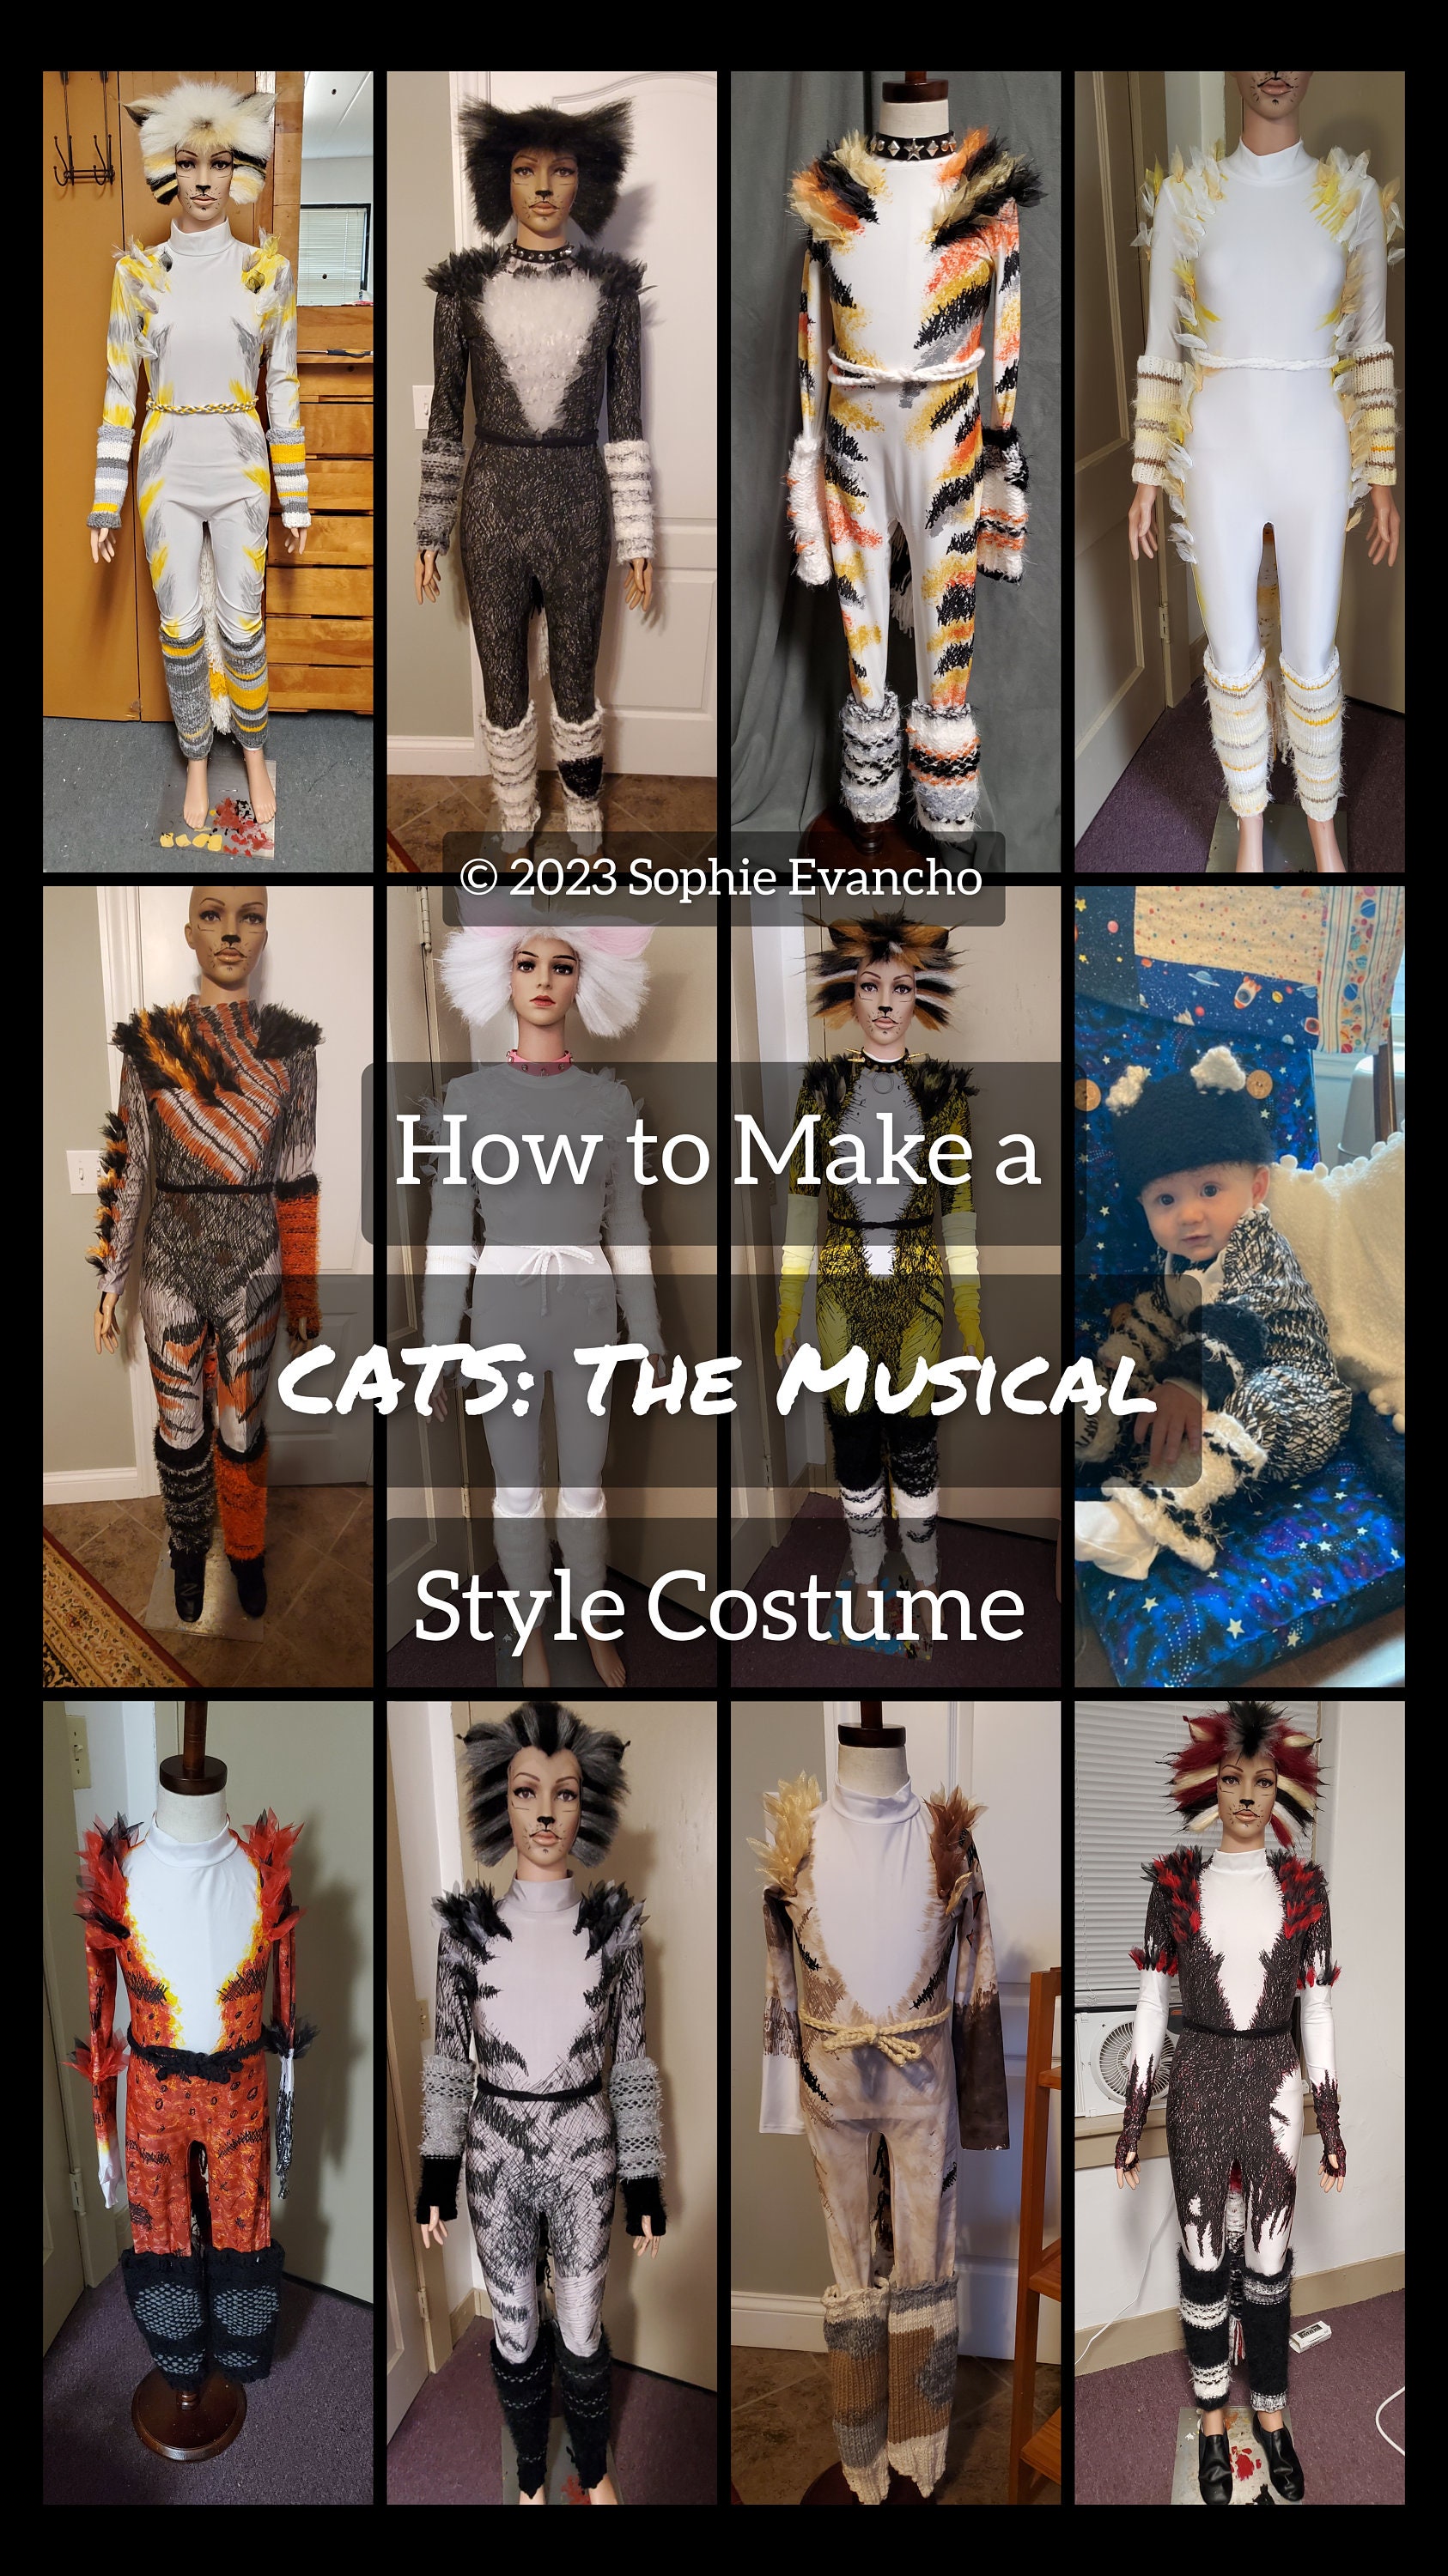 Musical cats kostüme